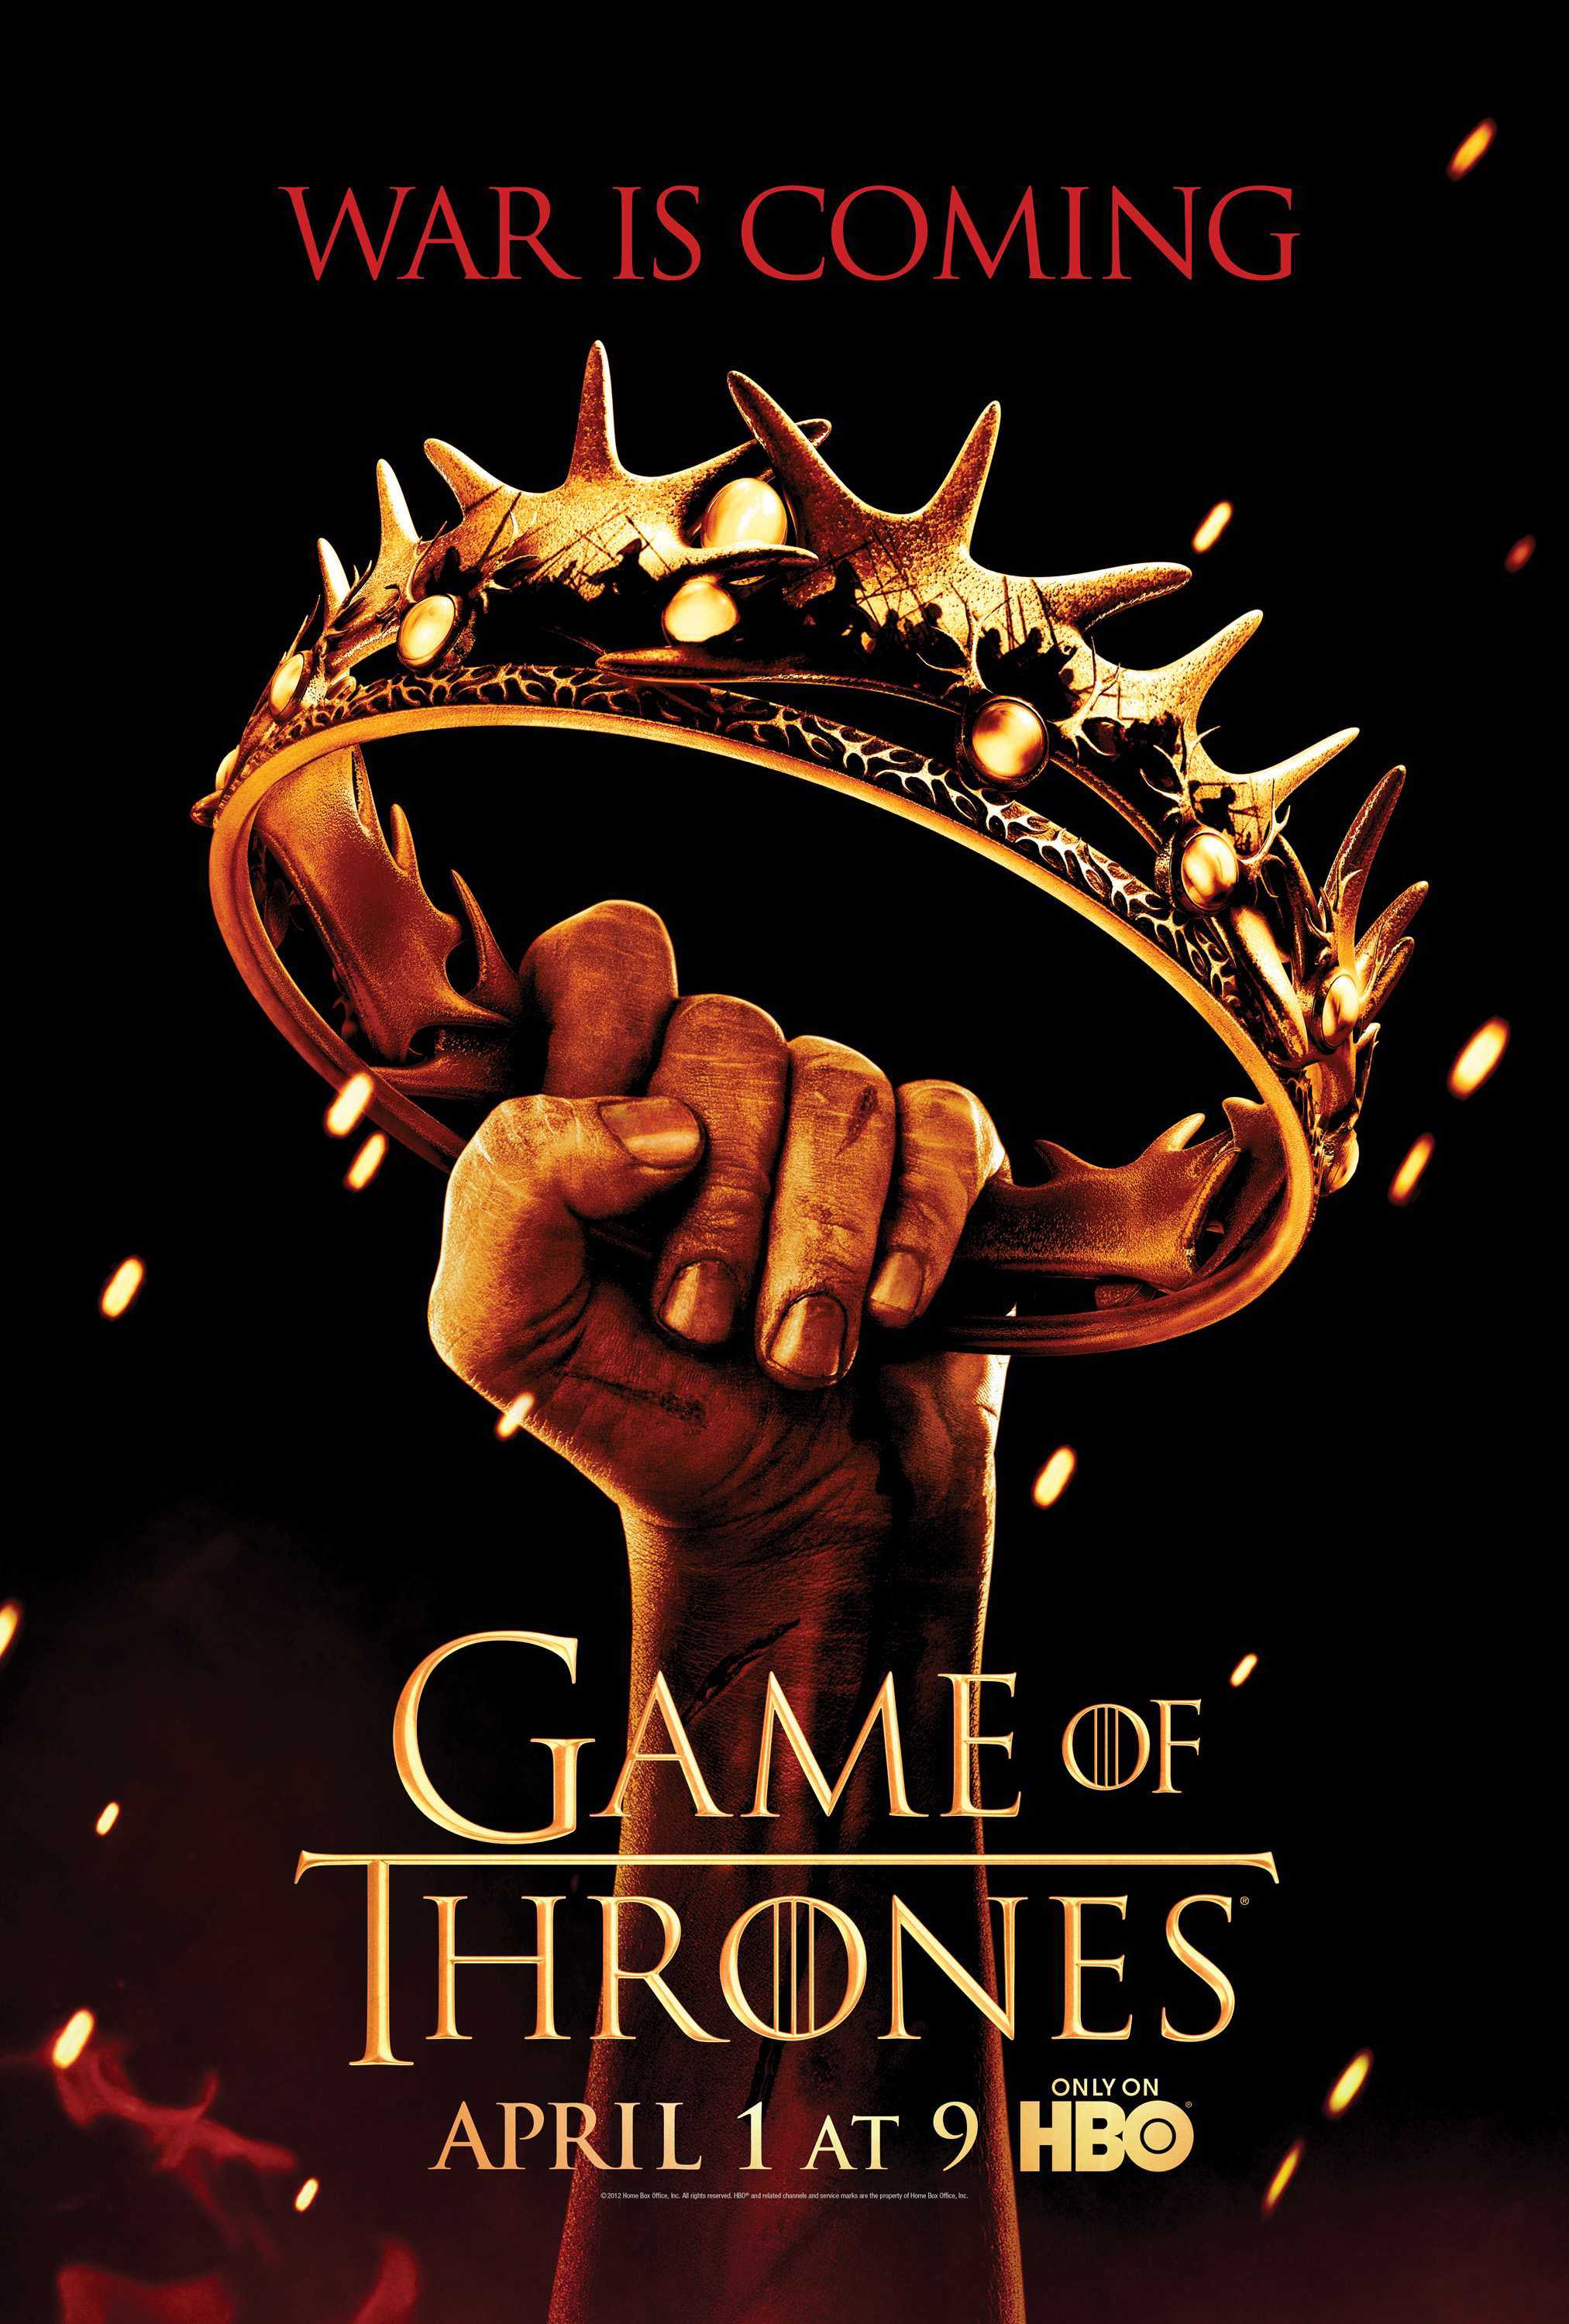 权力的游戏 第二季4k Game.of.Thrones.S02.2160p.BluRay.HEVC.TrueHD.7.1.Atmos 330.56GB